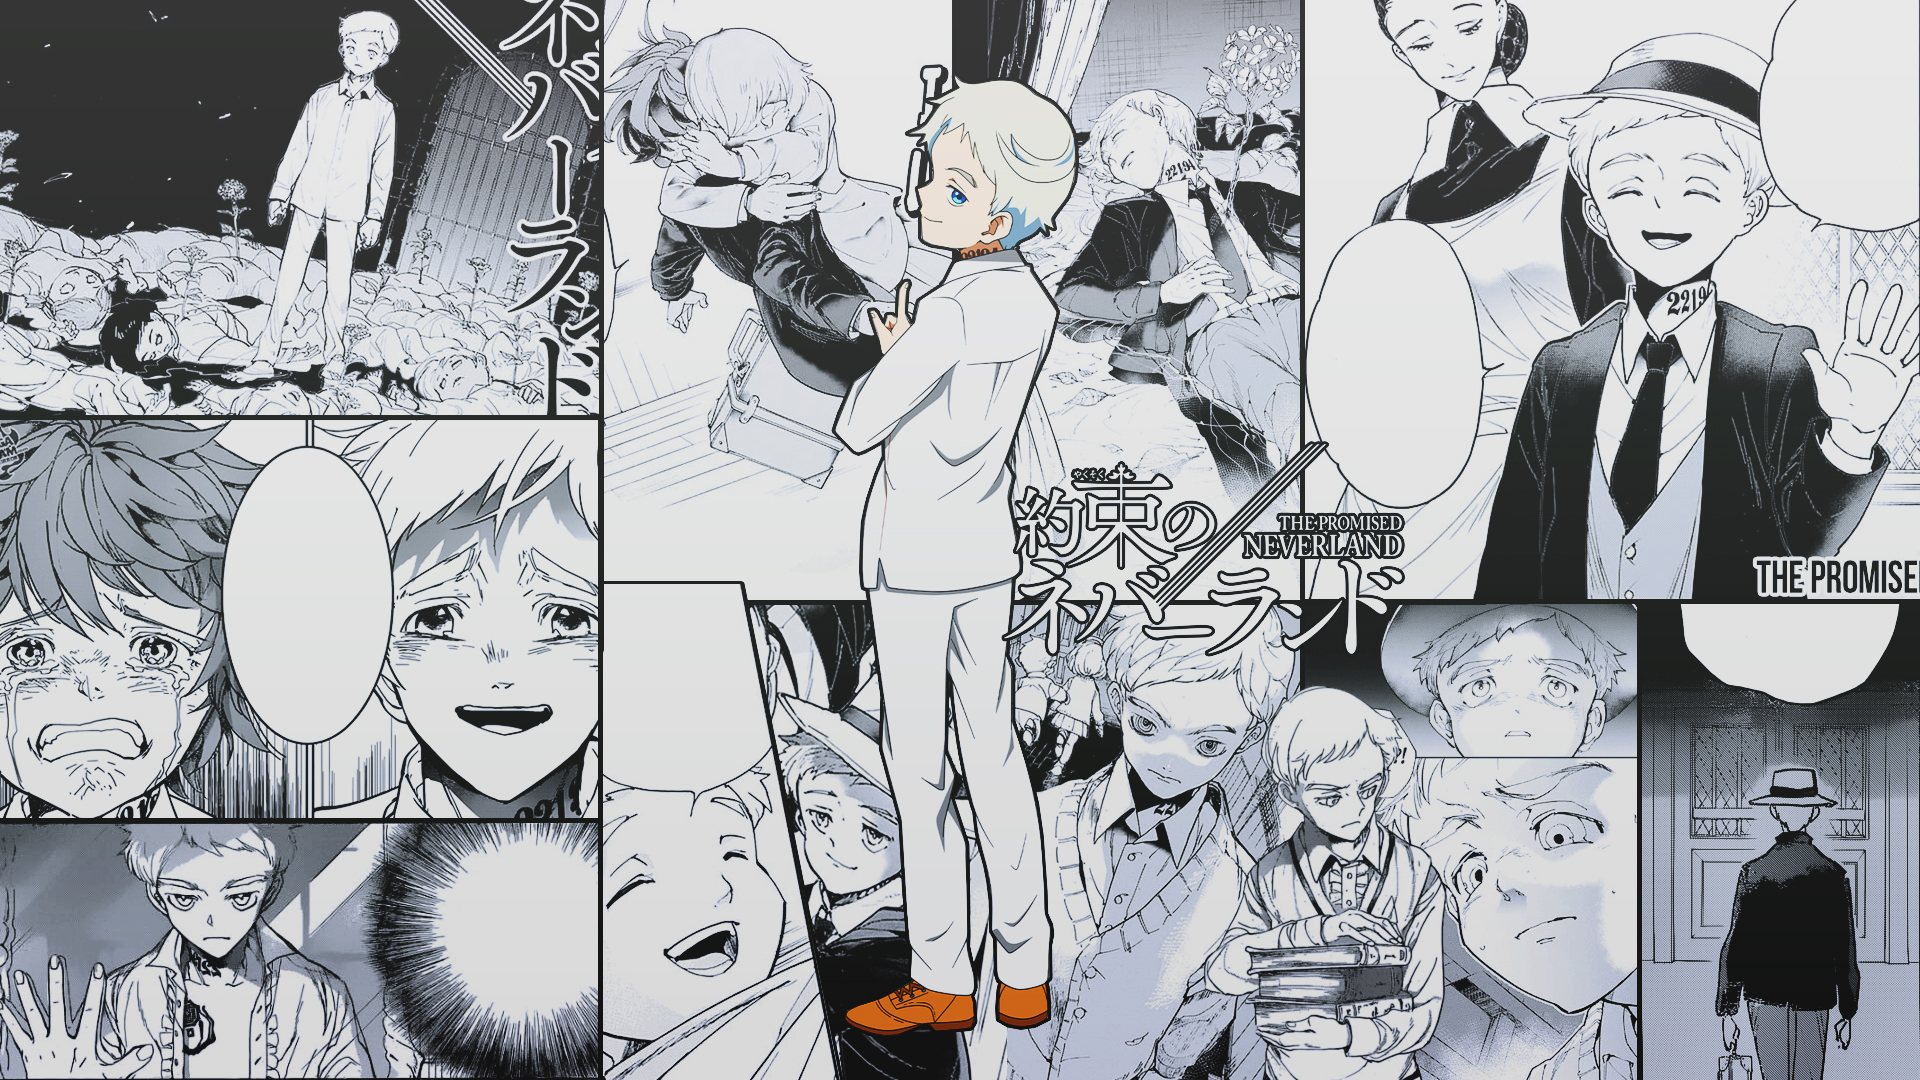 Anime Anime Boys The Promised Neverland Yakusoku No Neverland Norman The Promised Neverland Manga 1920x1080